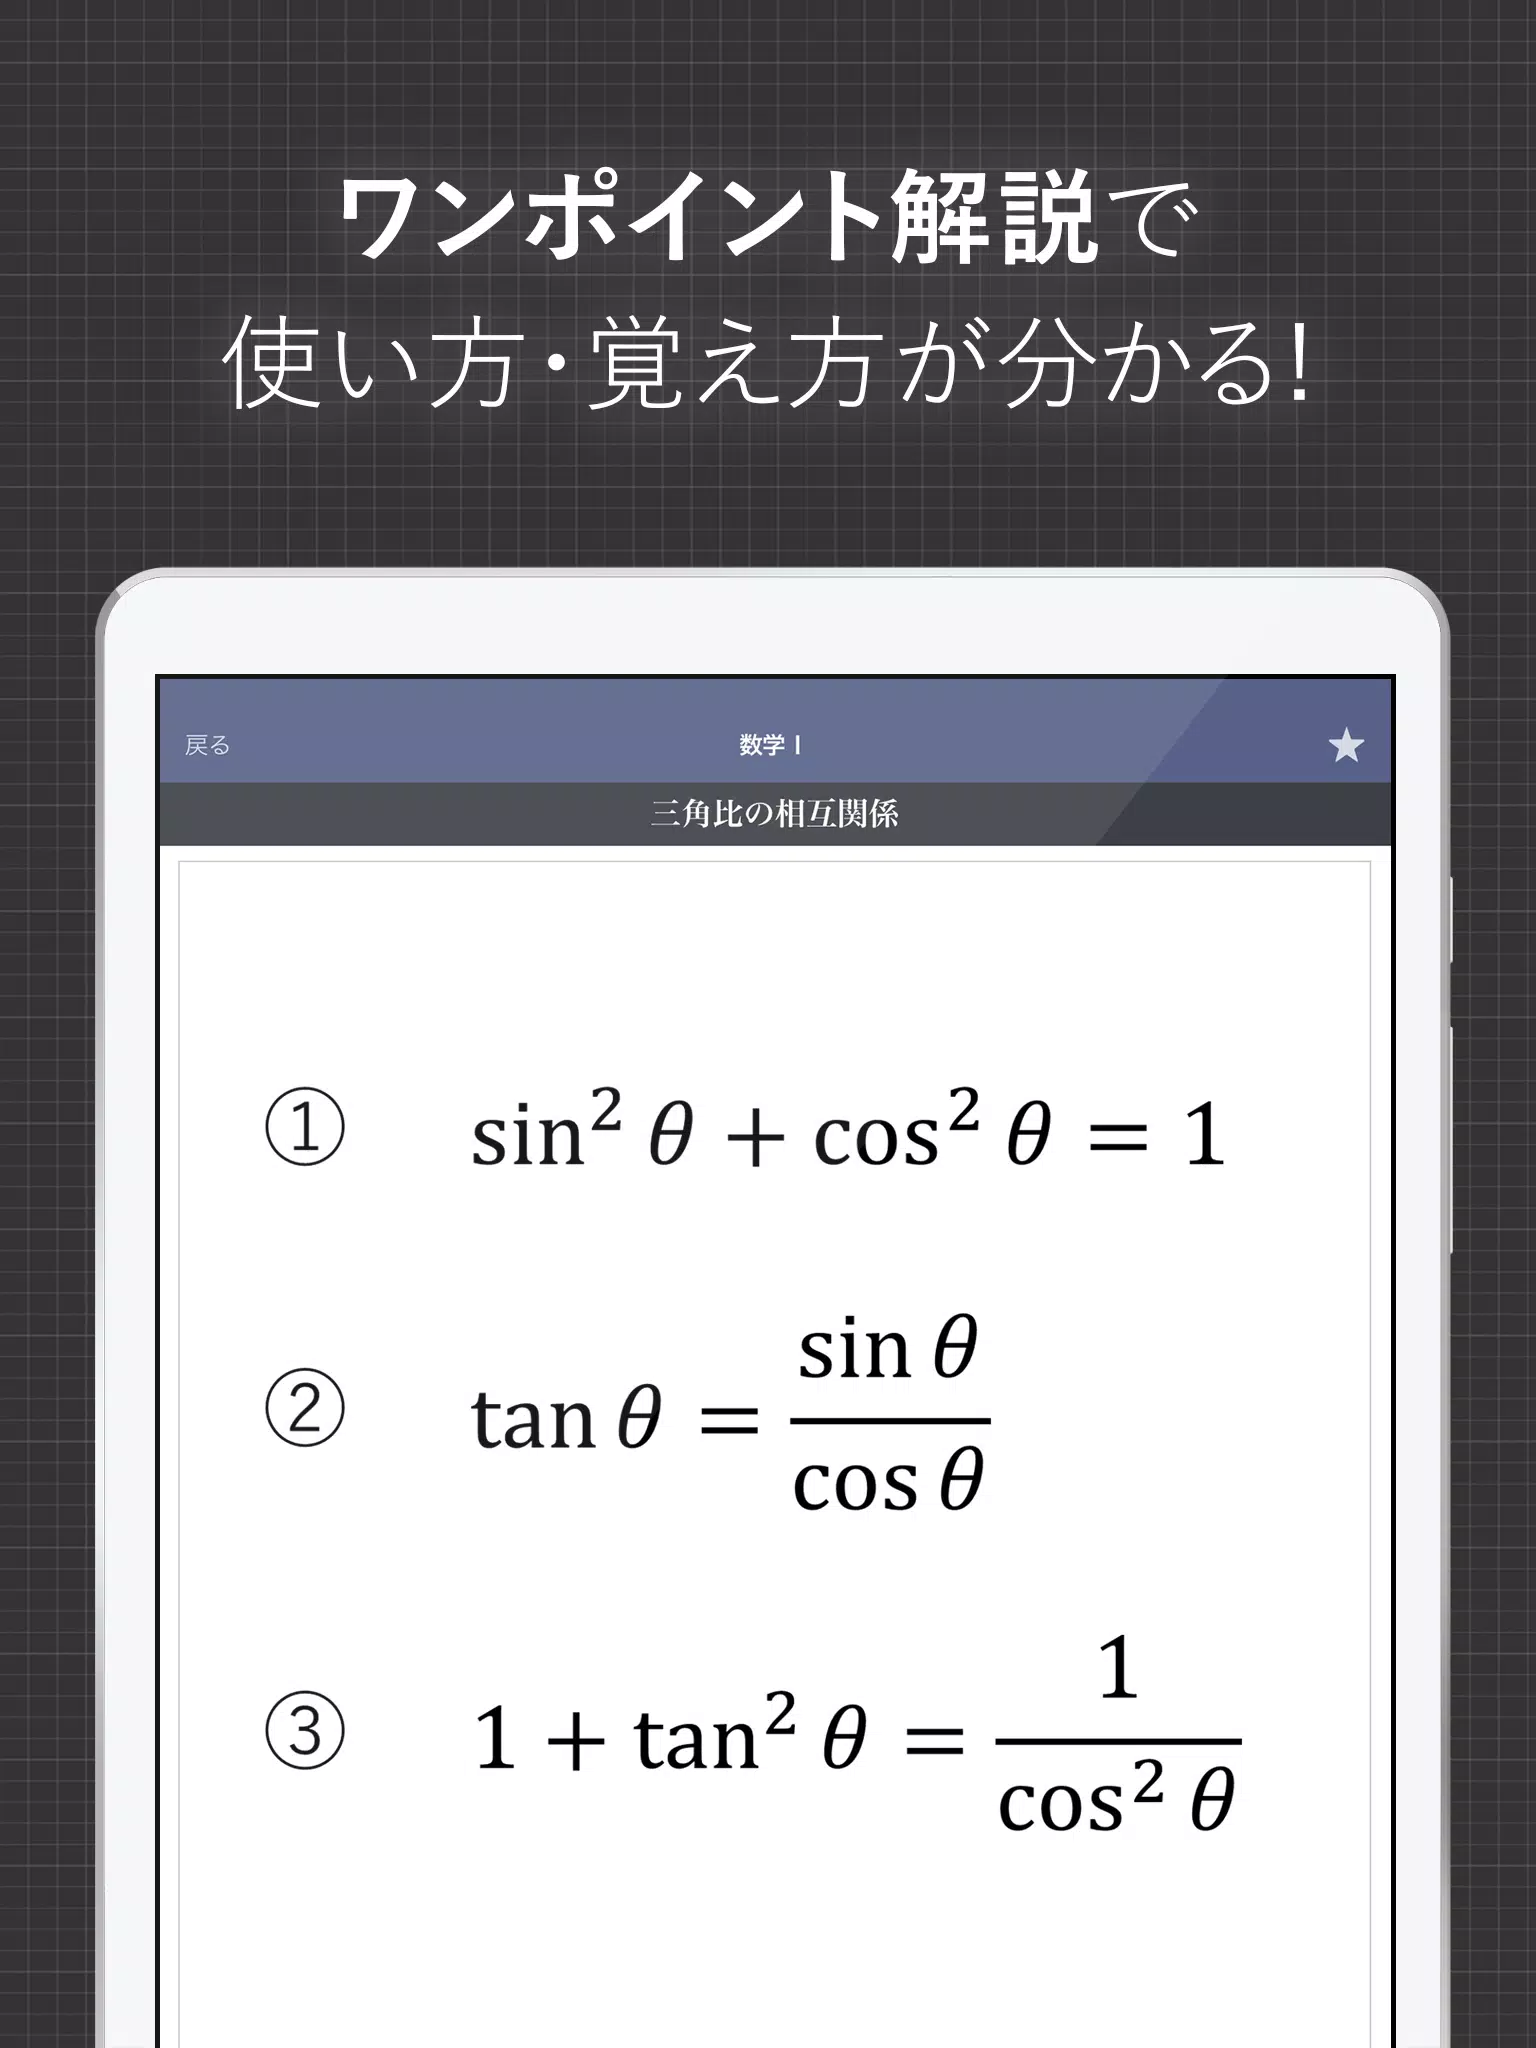 数学公式集 中学数学 高校数学の公式解説集 For Android Apk Download